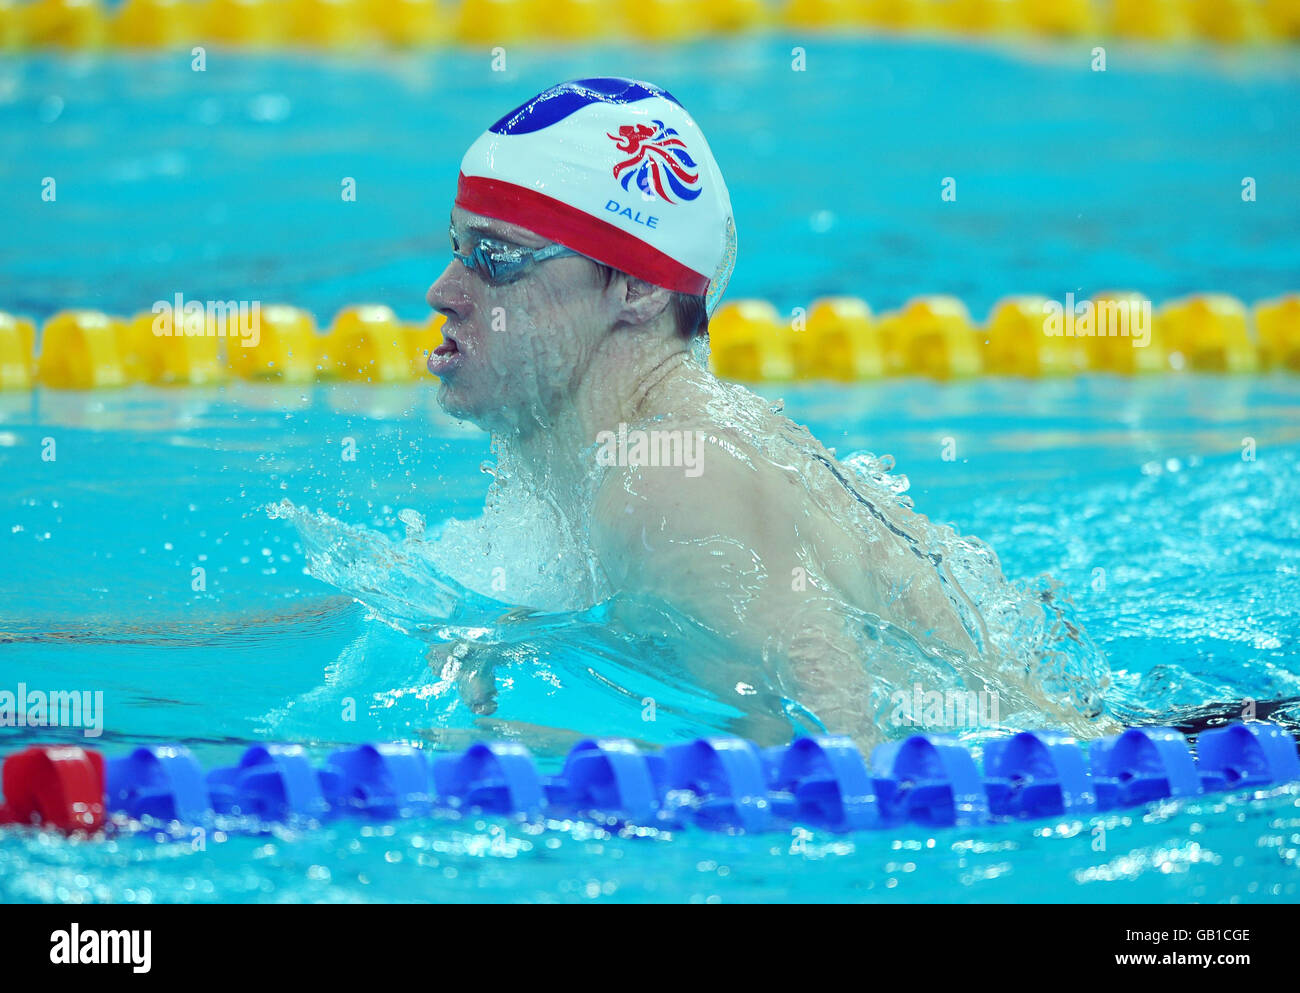 Euan Dale en Grande-Bretagne en action dans le Medley individuel de 400 m des hommes au Centre aquatique national de Beijing, en Chine. Banque D'Images